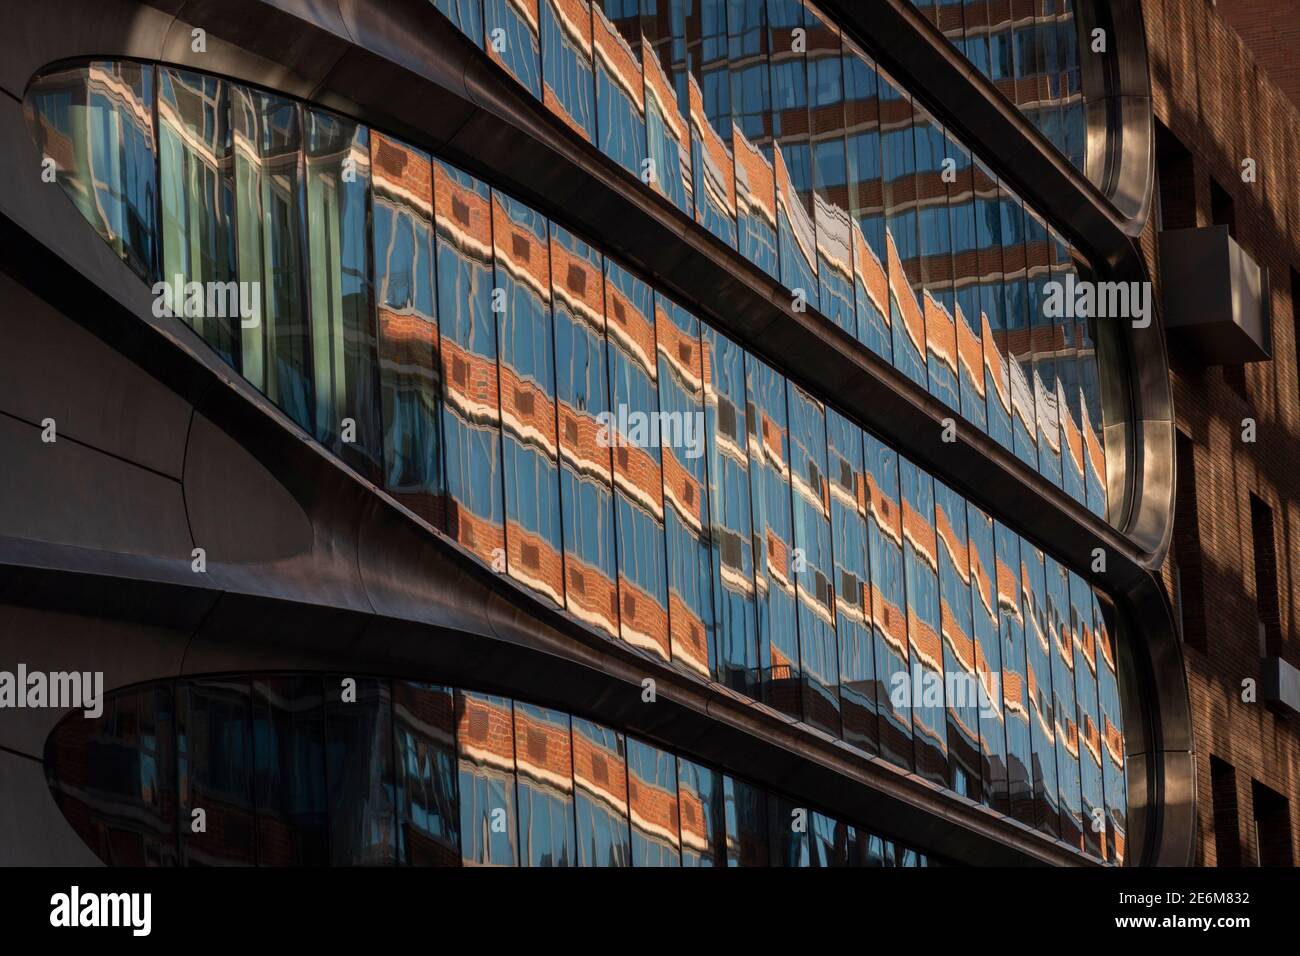 Réflexion de fenêtre sur le bâtiment Zaha Hadid à Chelsea près de la High Line Manhattan, New York Banque D'Images